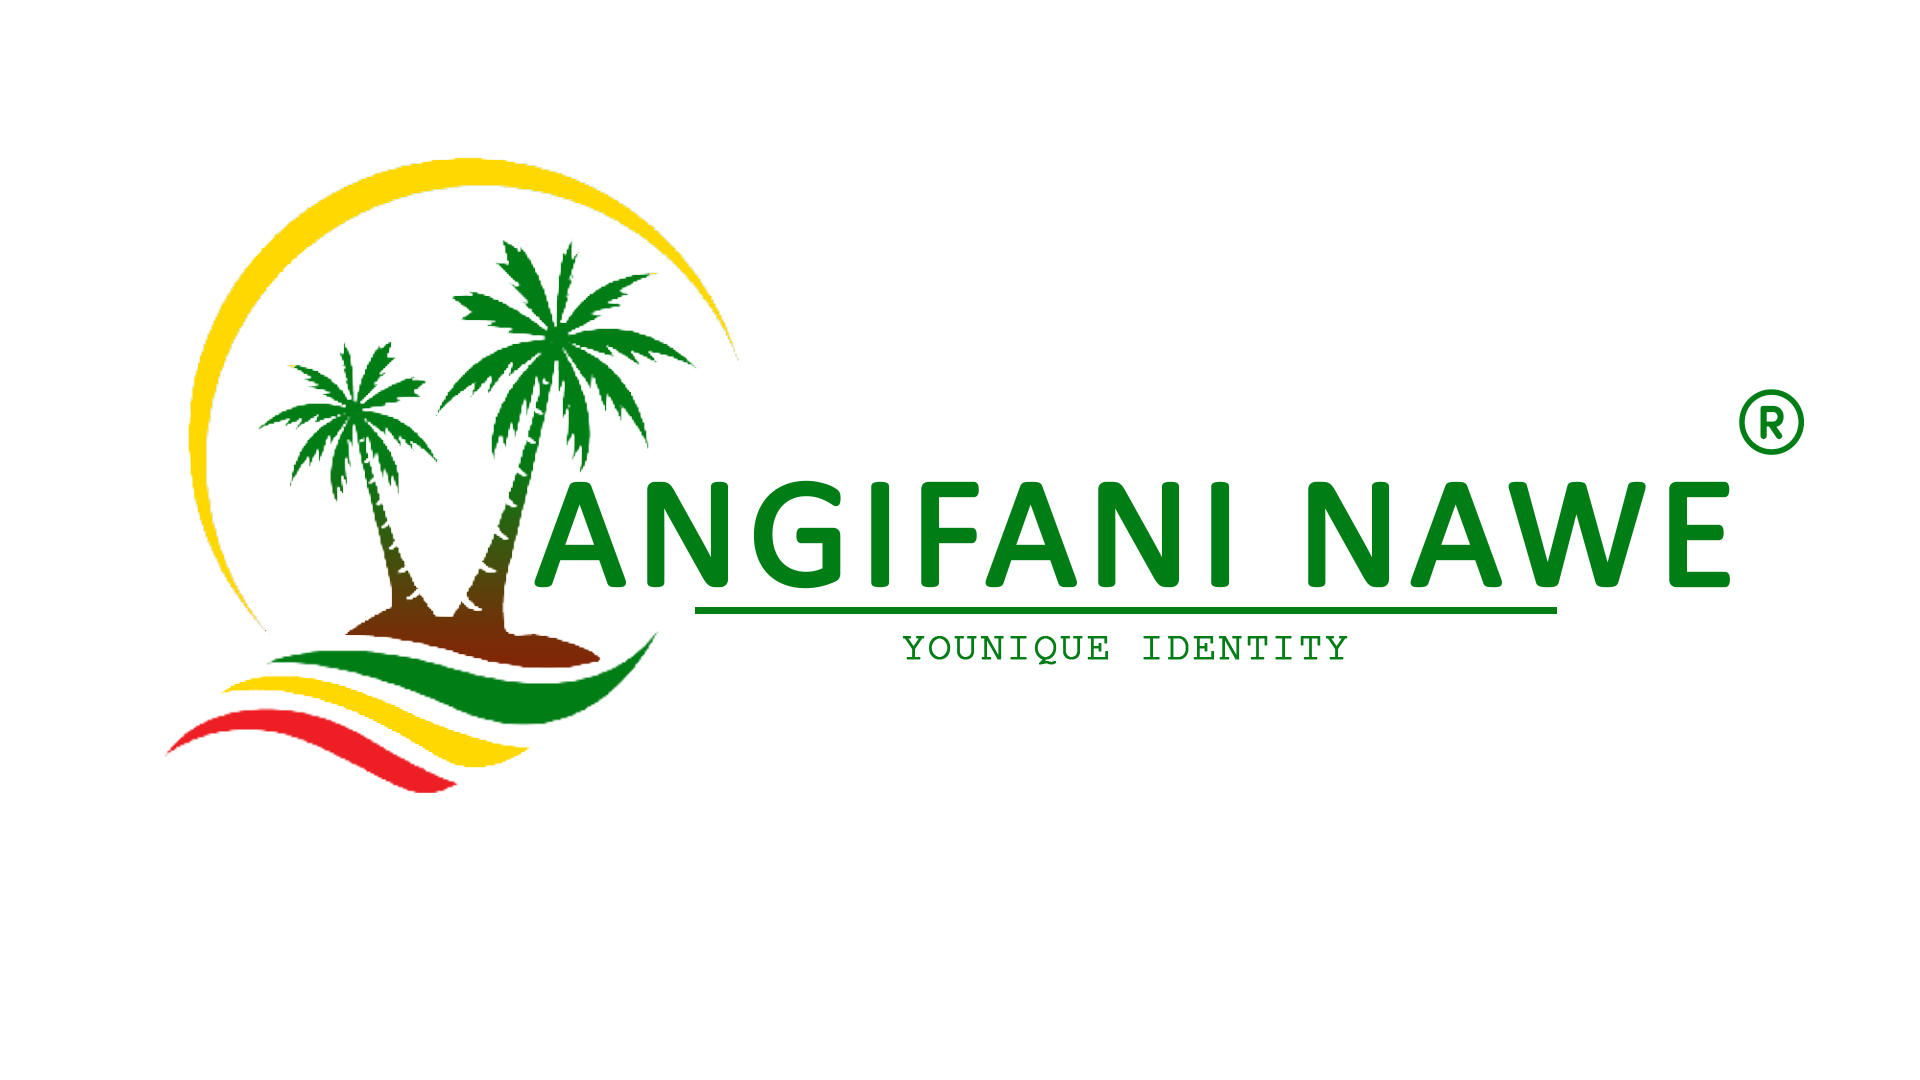 Angifani Nawe